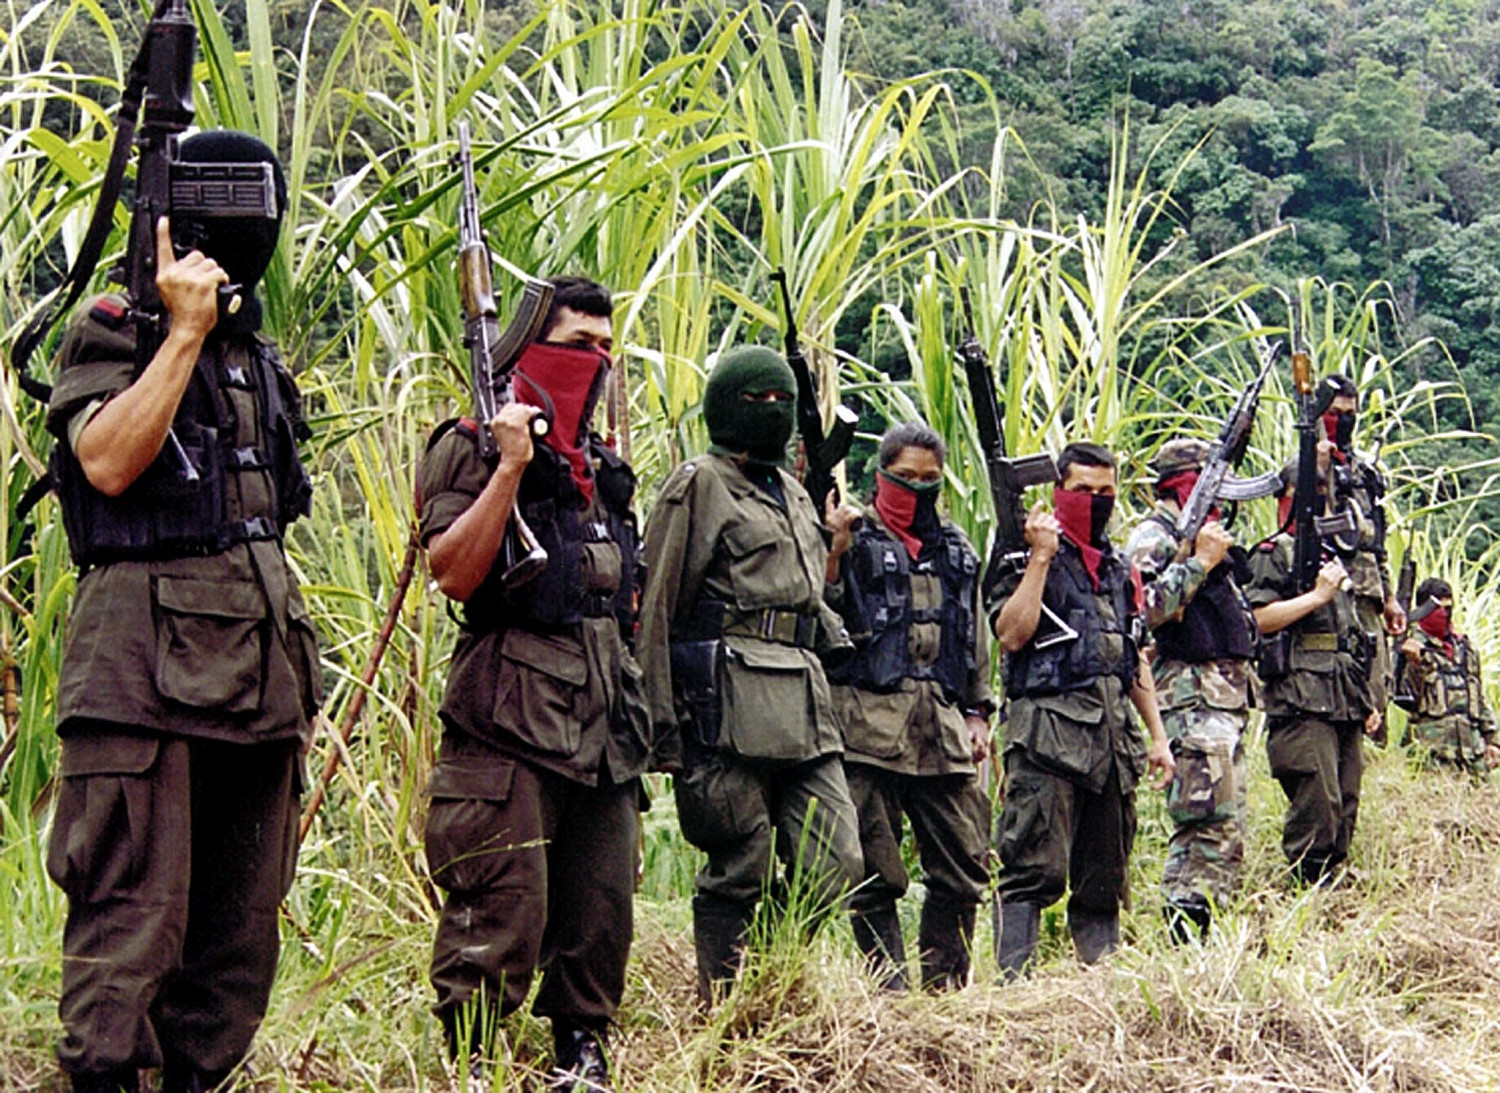 Membros do grupo de guerrilha do Exército Nacional de Libertação da Colômbia (ELN) nas montanhas de Perija, perto da cidade fronteiriça de Cúcuta, em 6 de dezembro de 1999 (Foto por STR / AFP / Getty Images)